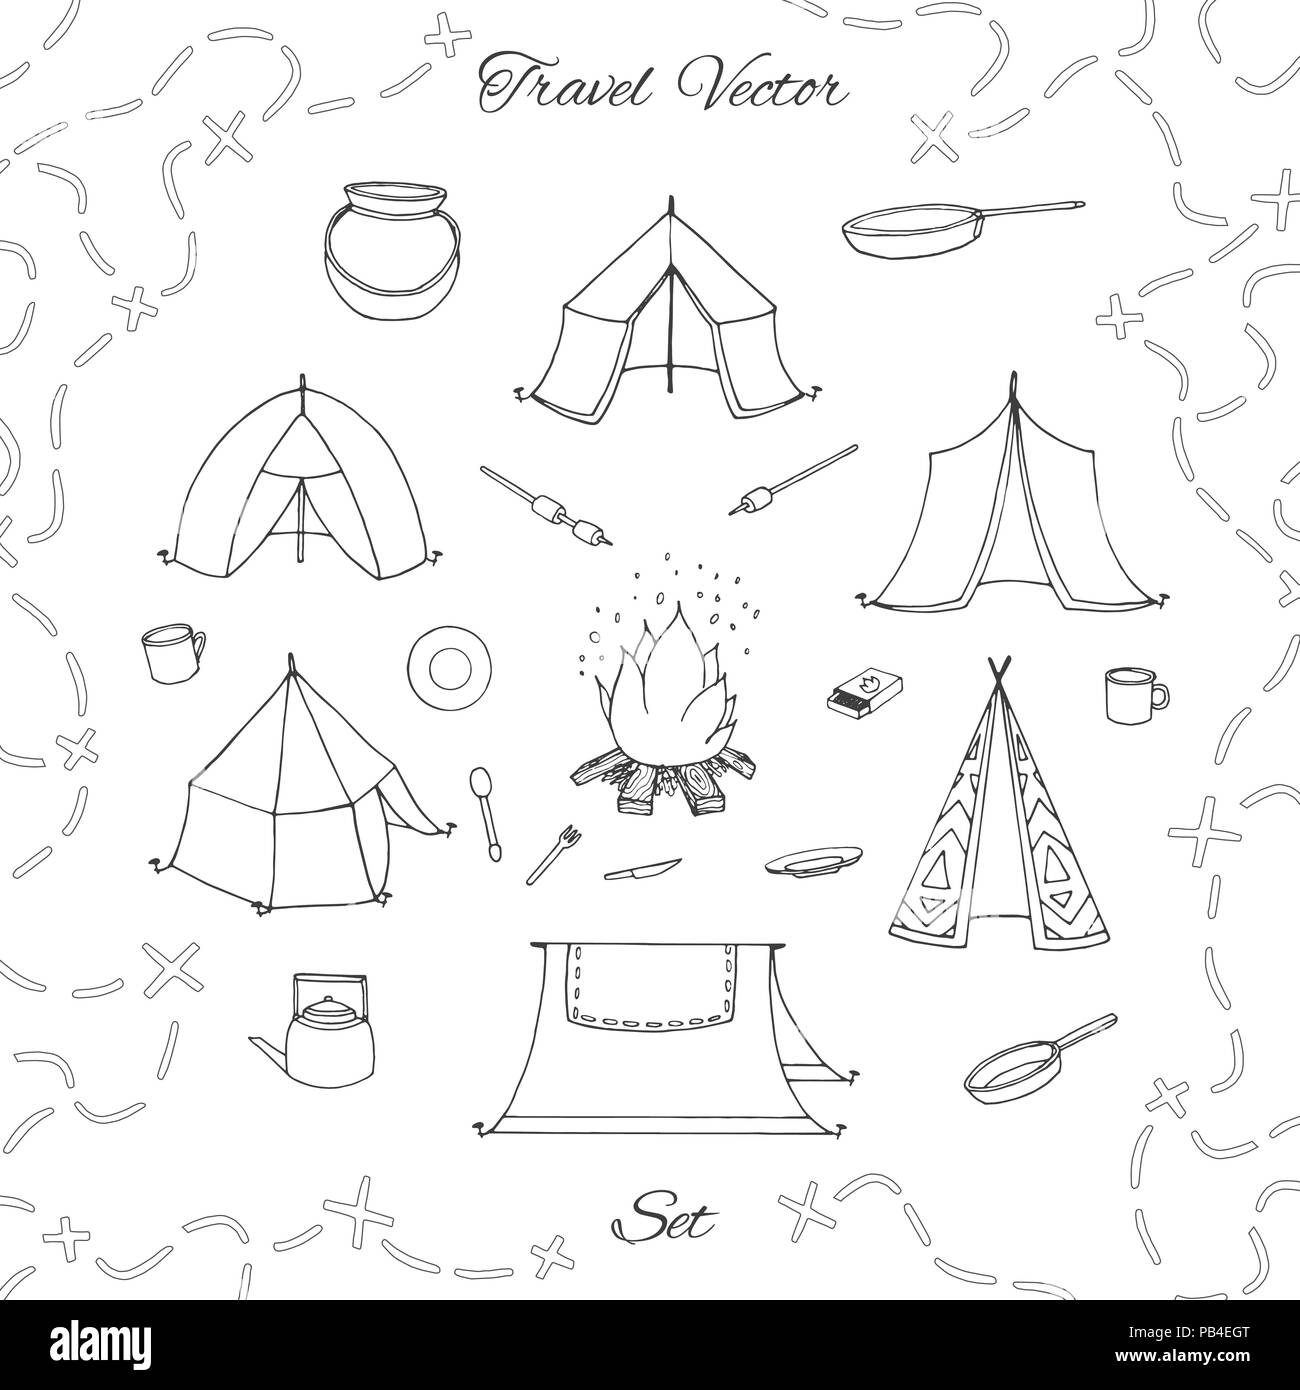 Vector dibujados a mano set de camping con carpas, fogatas, hervidor, placas, caldera y pan de esquema. Contornos de viaje aislado de la colección backgrou blanco Ilustración del Vector